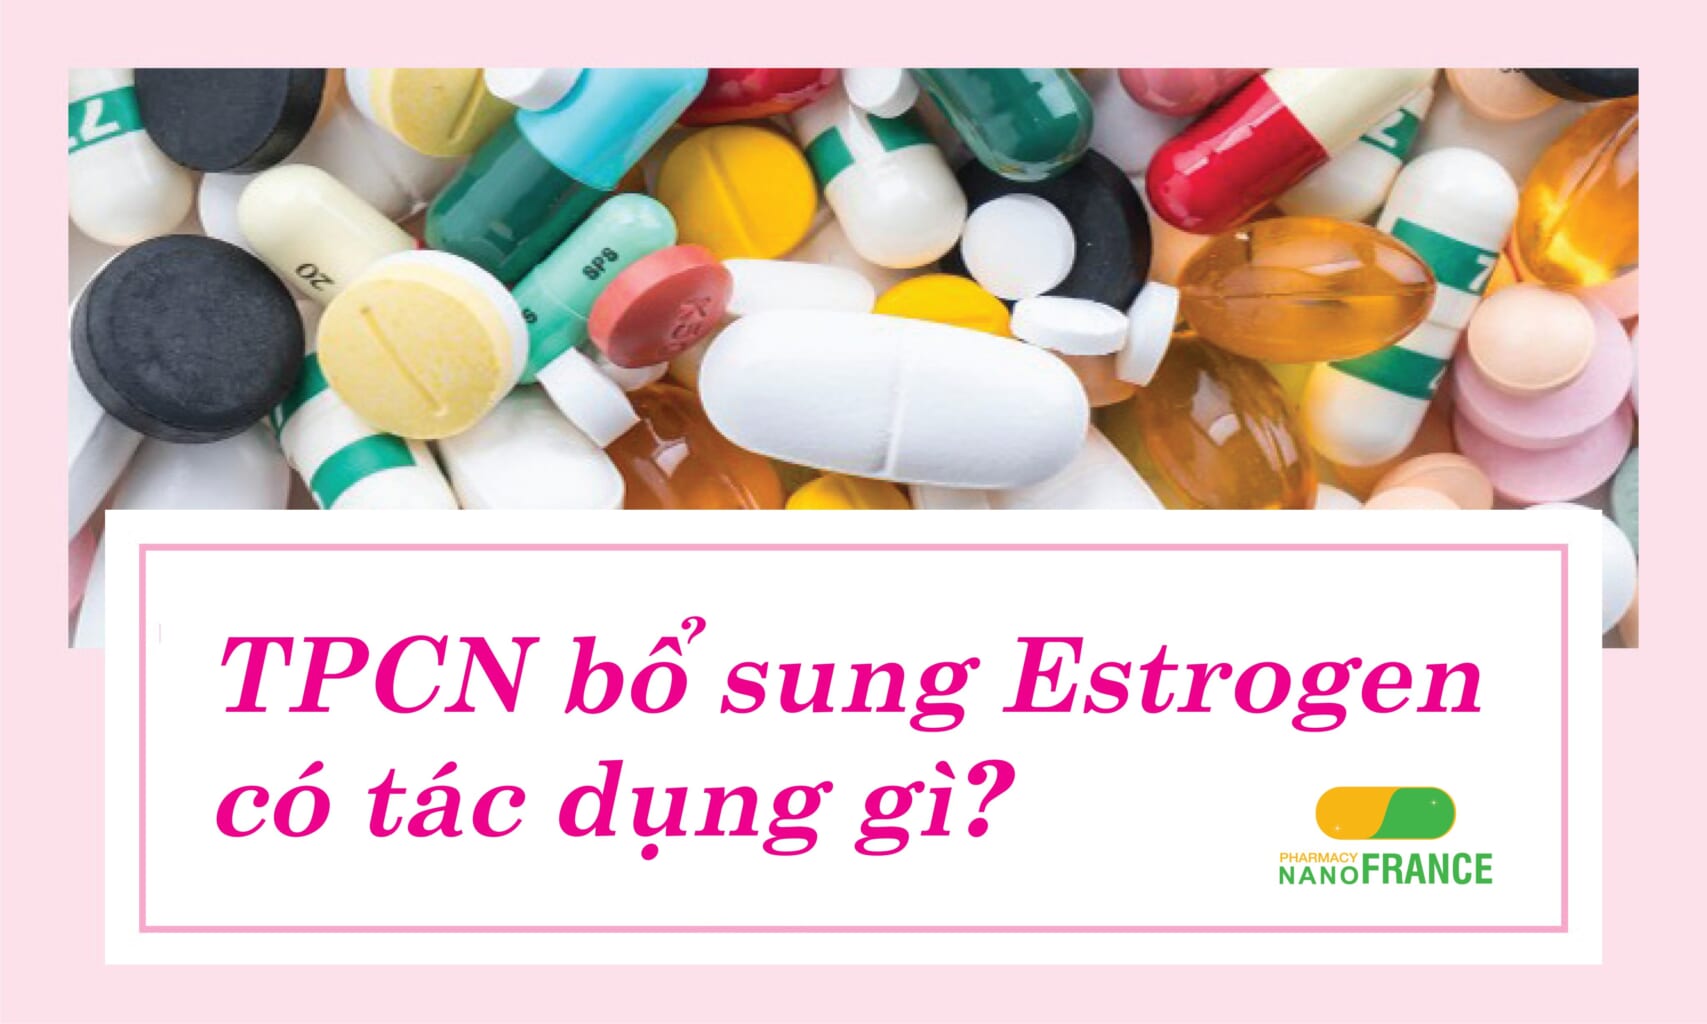 TPCN bổ sung estrogen có tác dụng gì